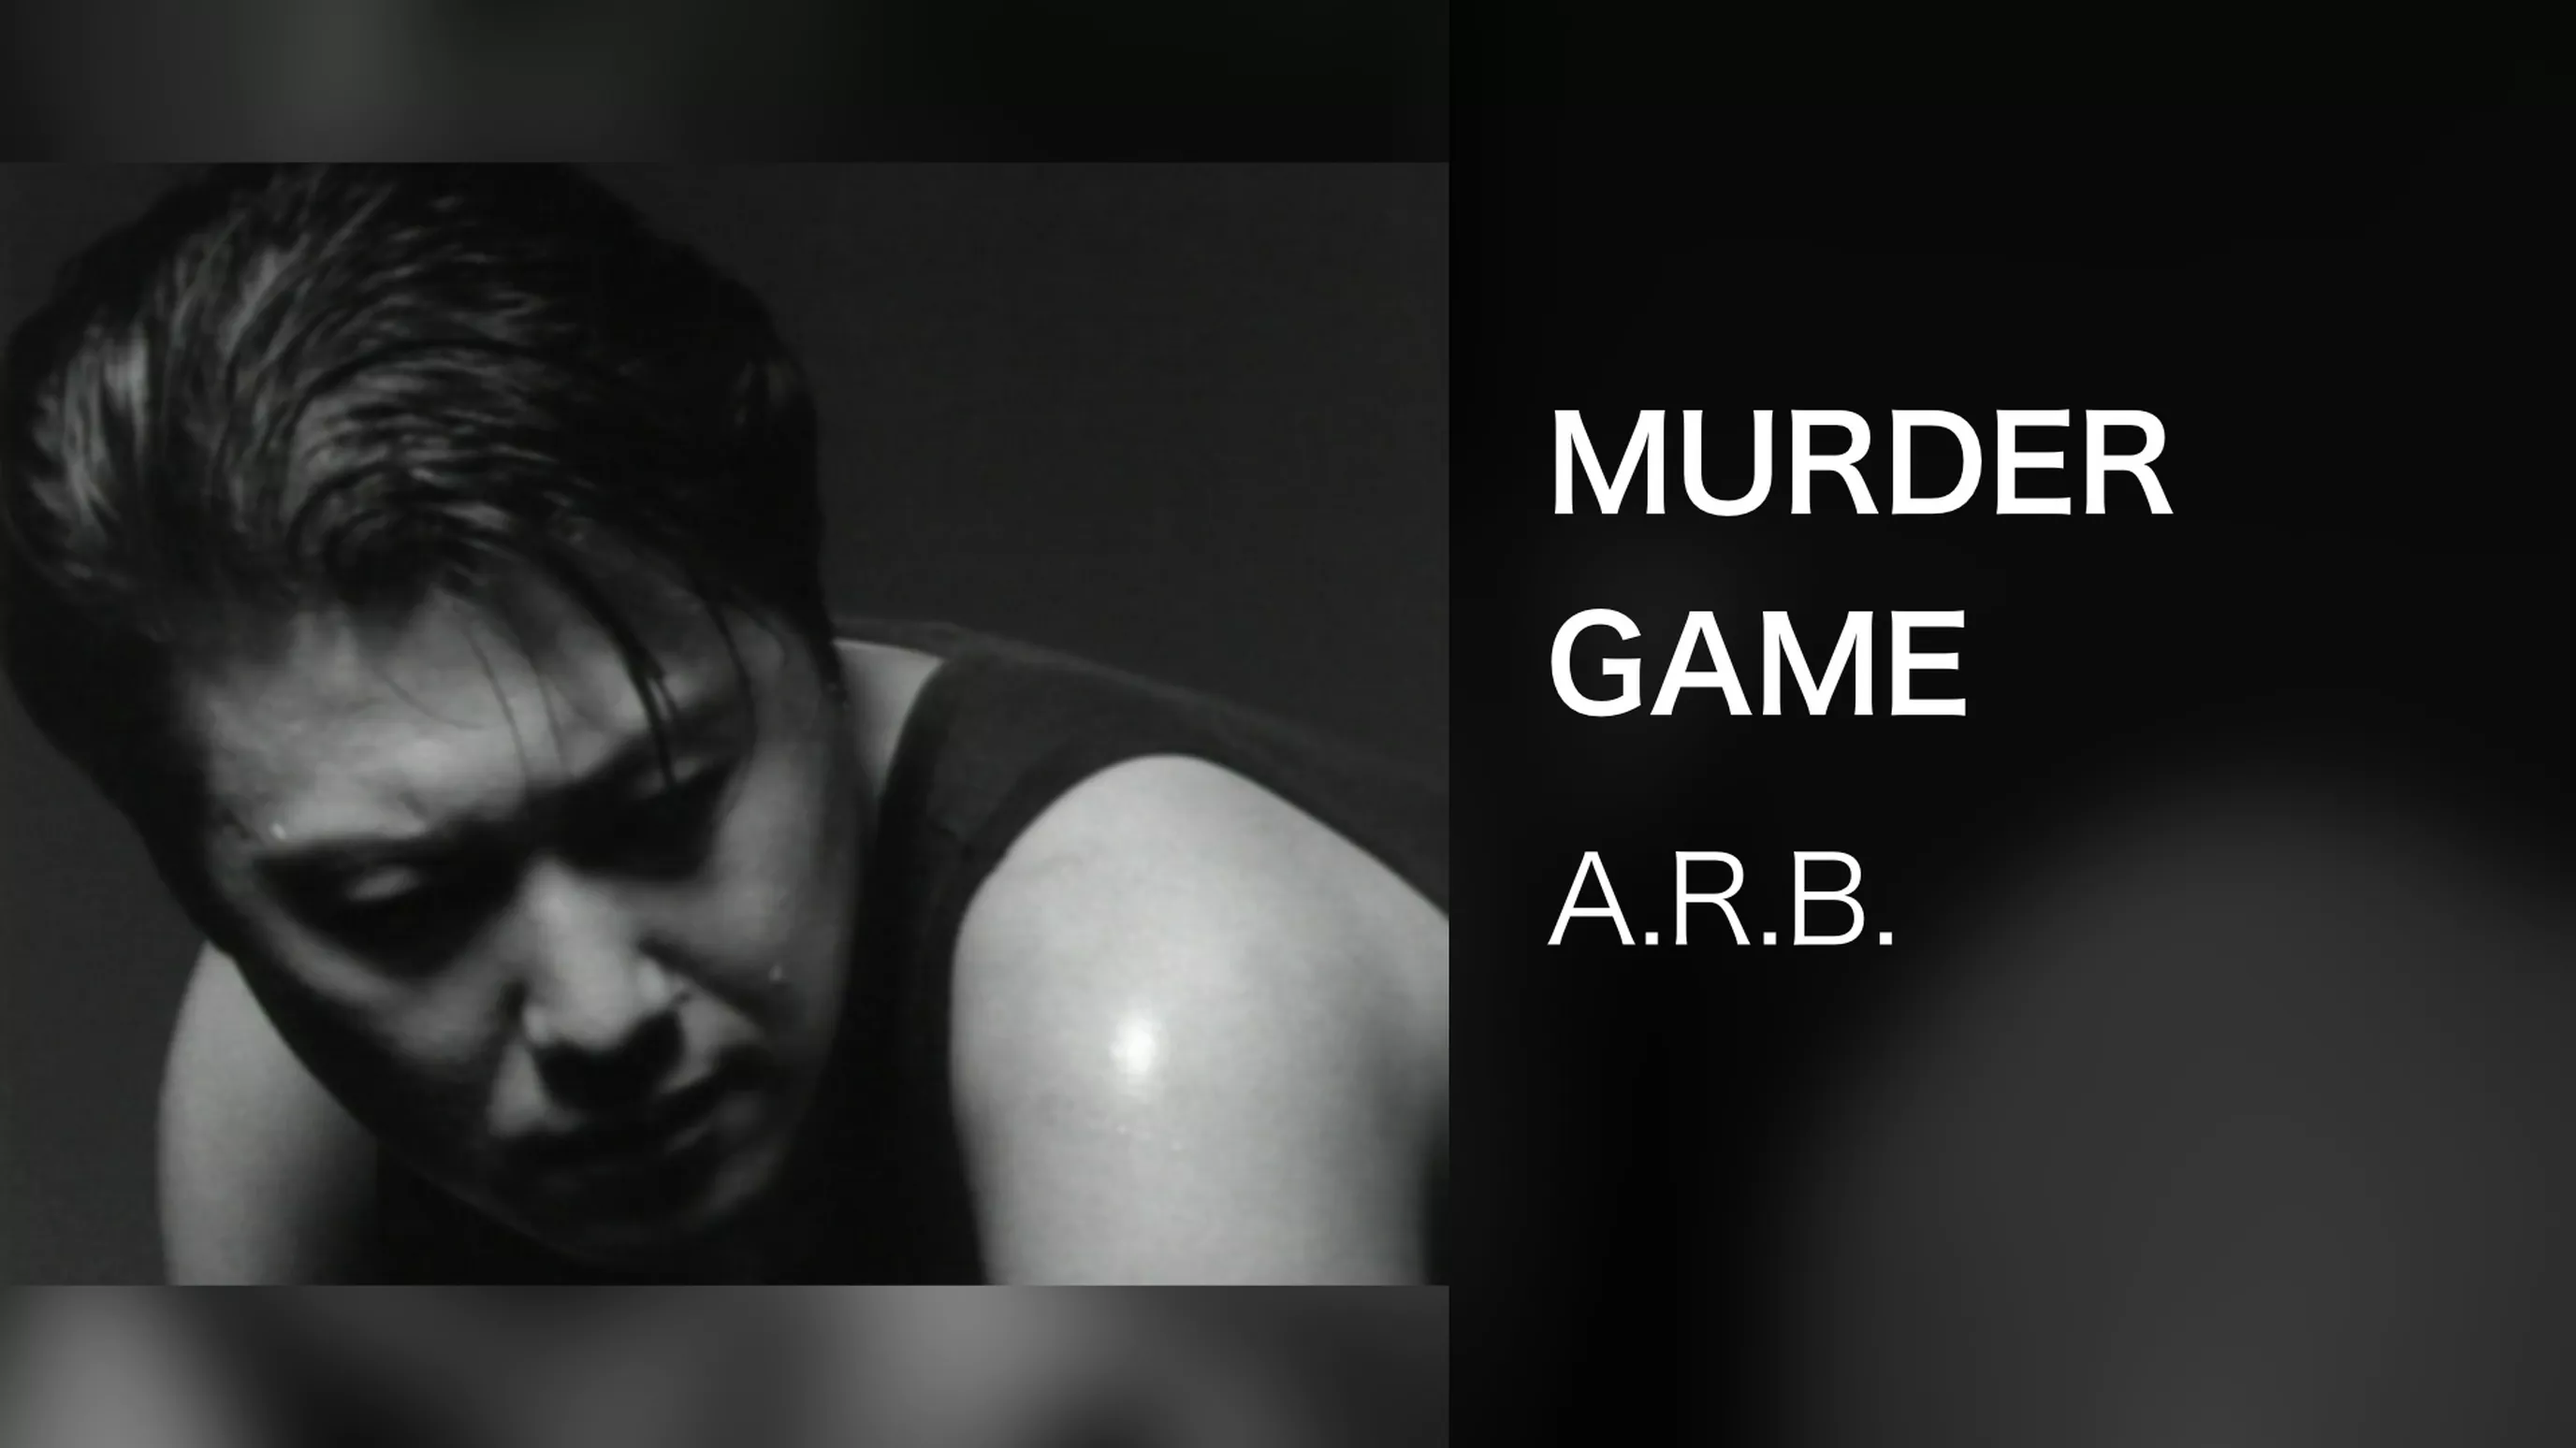 MURDER GAME